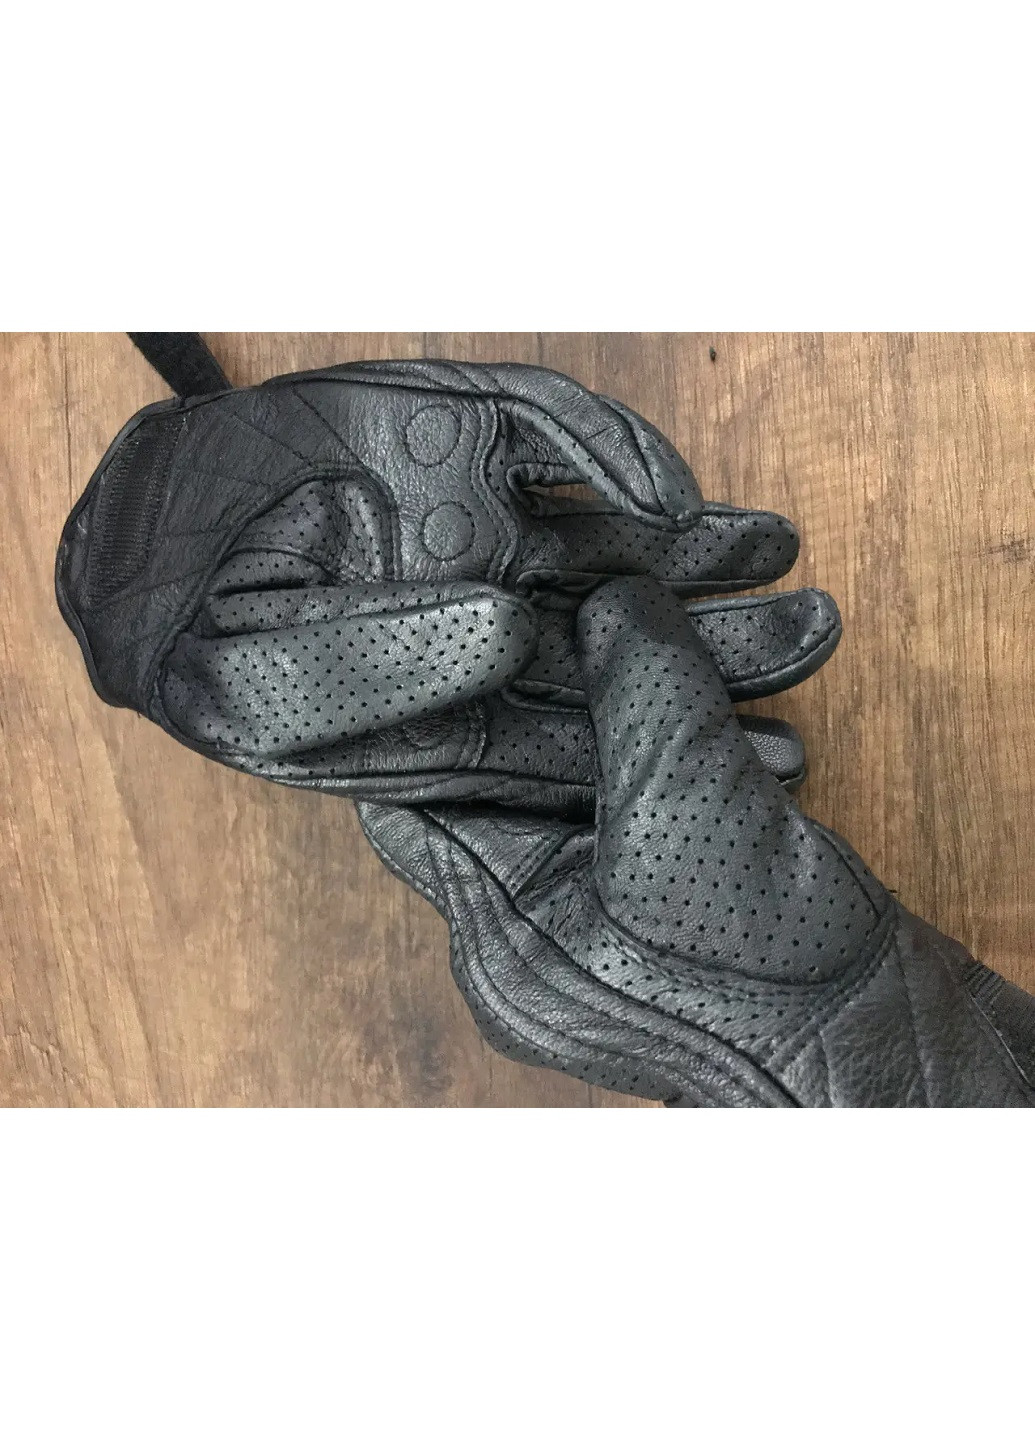 Мото перчатки рукавицы для мотоцикла с перфорацией кожаные летние вентилируемые унисекс мотозащита (57229-Нов) Размер M Francesco Marconi (252845958)